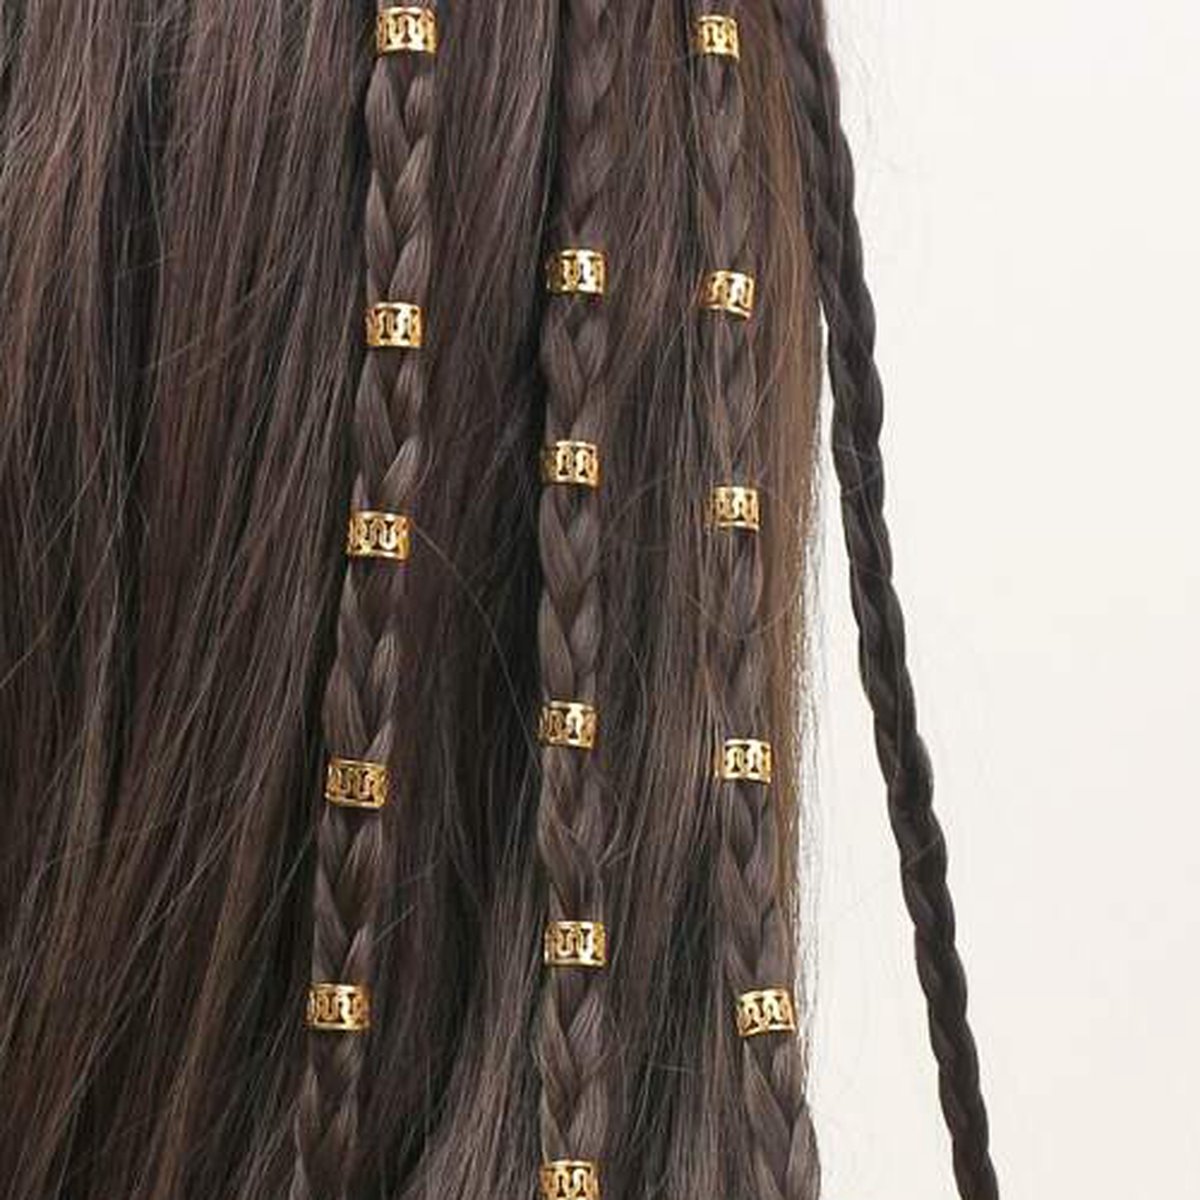 Haar Ringen Vlechten Goud (40 stuks) - Haar Kralen - Haarringen dreadlock kralen - Kraaltjes / Clips - Haar Accessoires Vrouwen - Vlecht accessoires - Hair Beads Gold - 40 stuks